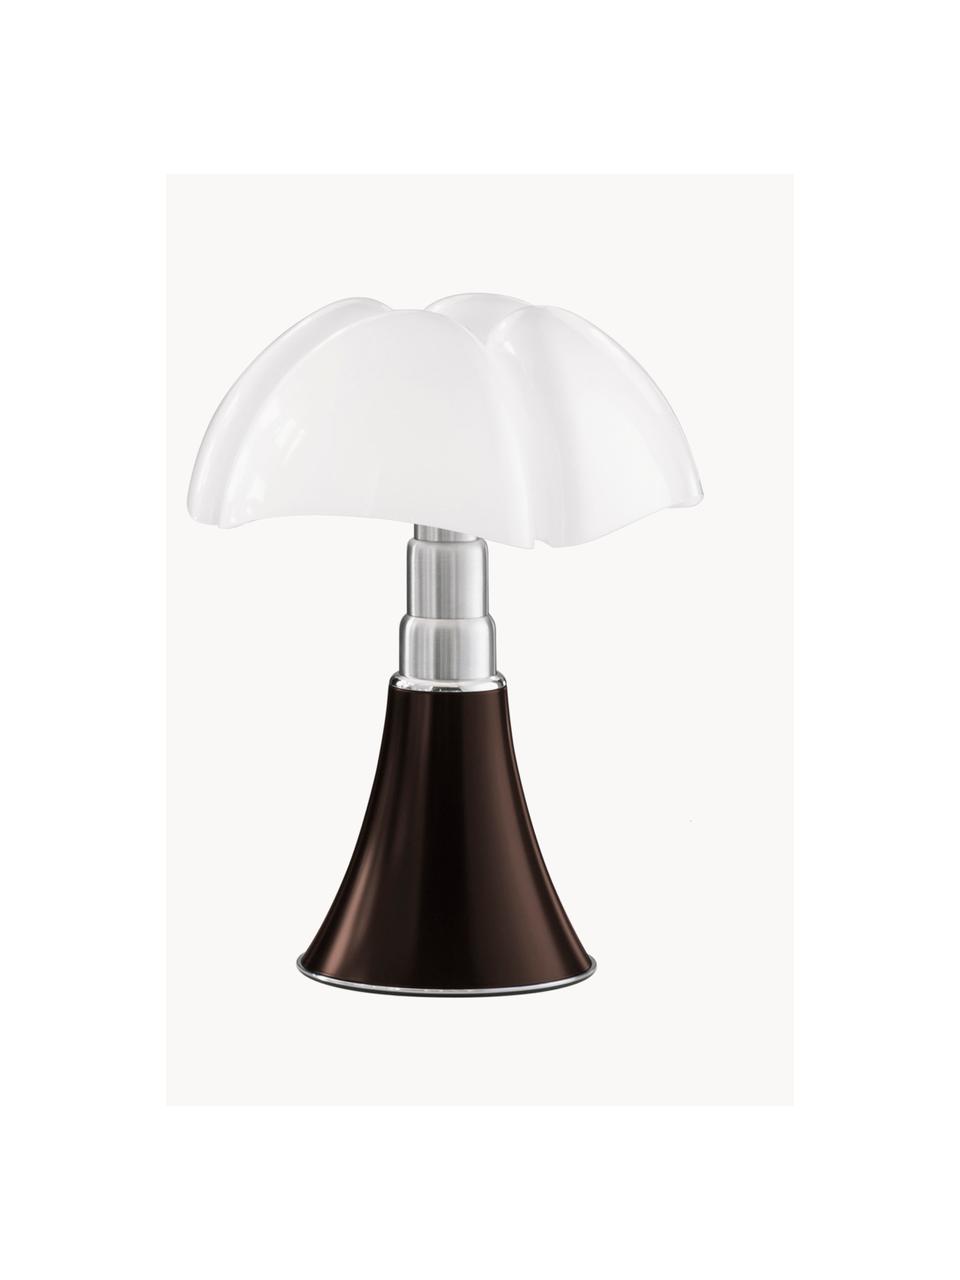 Mobilna lampa stołowa LED z funkcją przyciemniania Pipistrello, Stelaż: metal, aluminium, lakiero, Ciemny brązowy, matowy, Ø 27 x W 35 cm